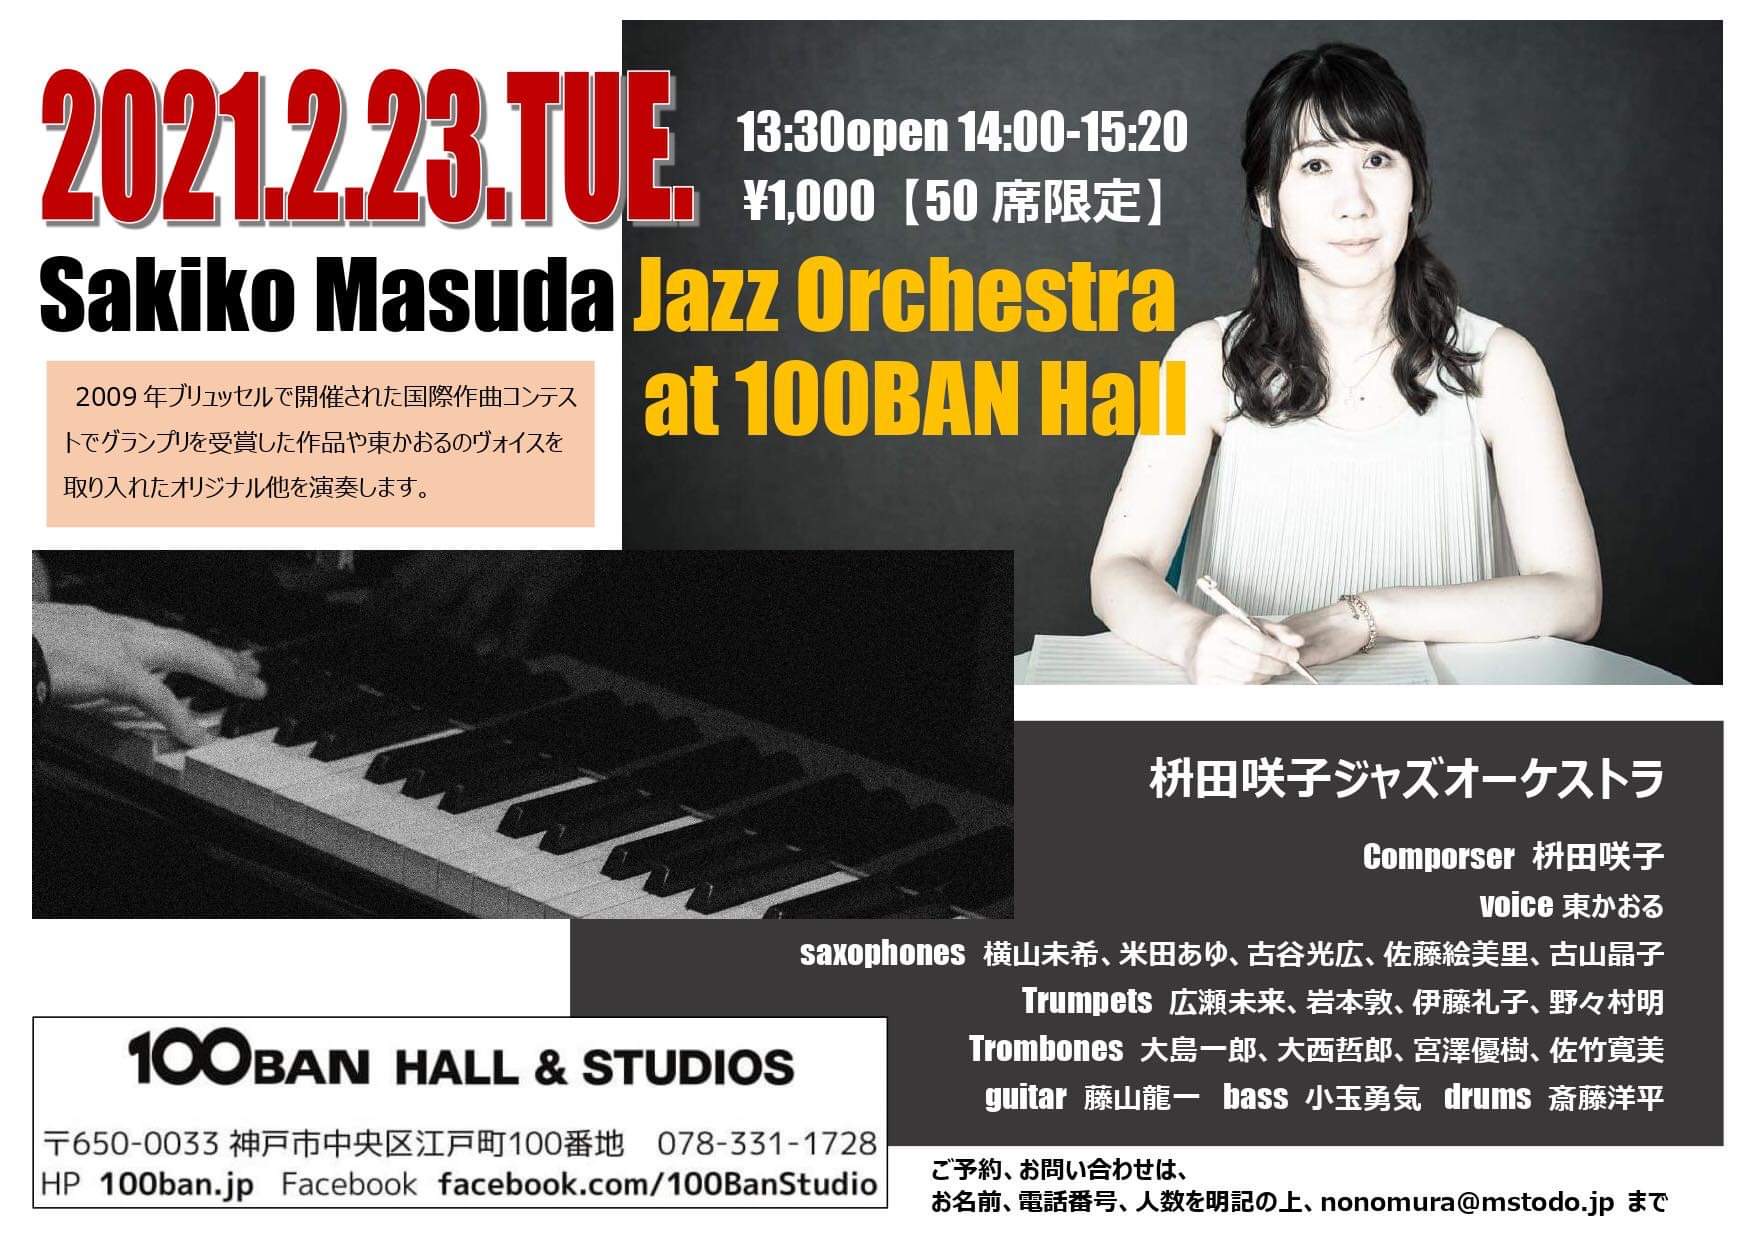 Sakiko Masuda Jazz Orchestra on Feb. 23, 2021【Gig】